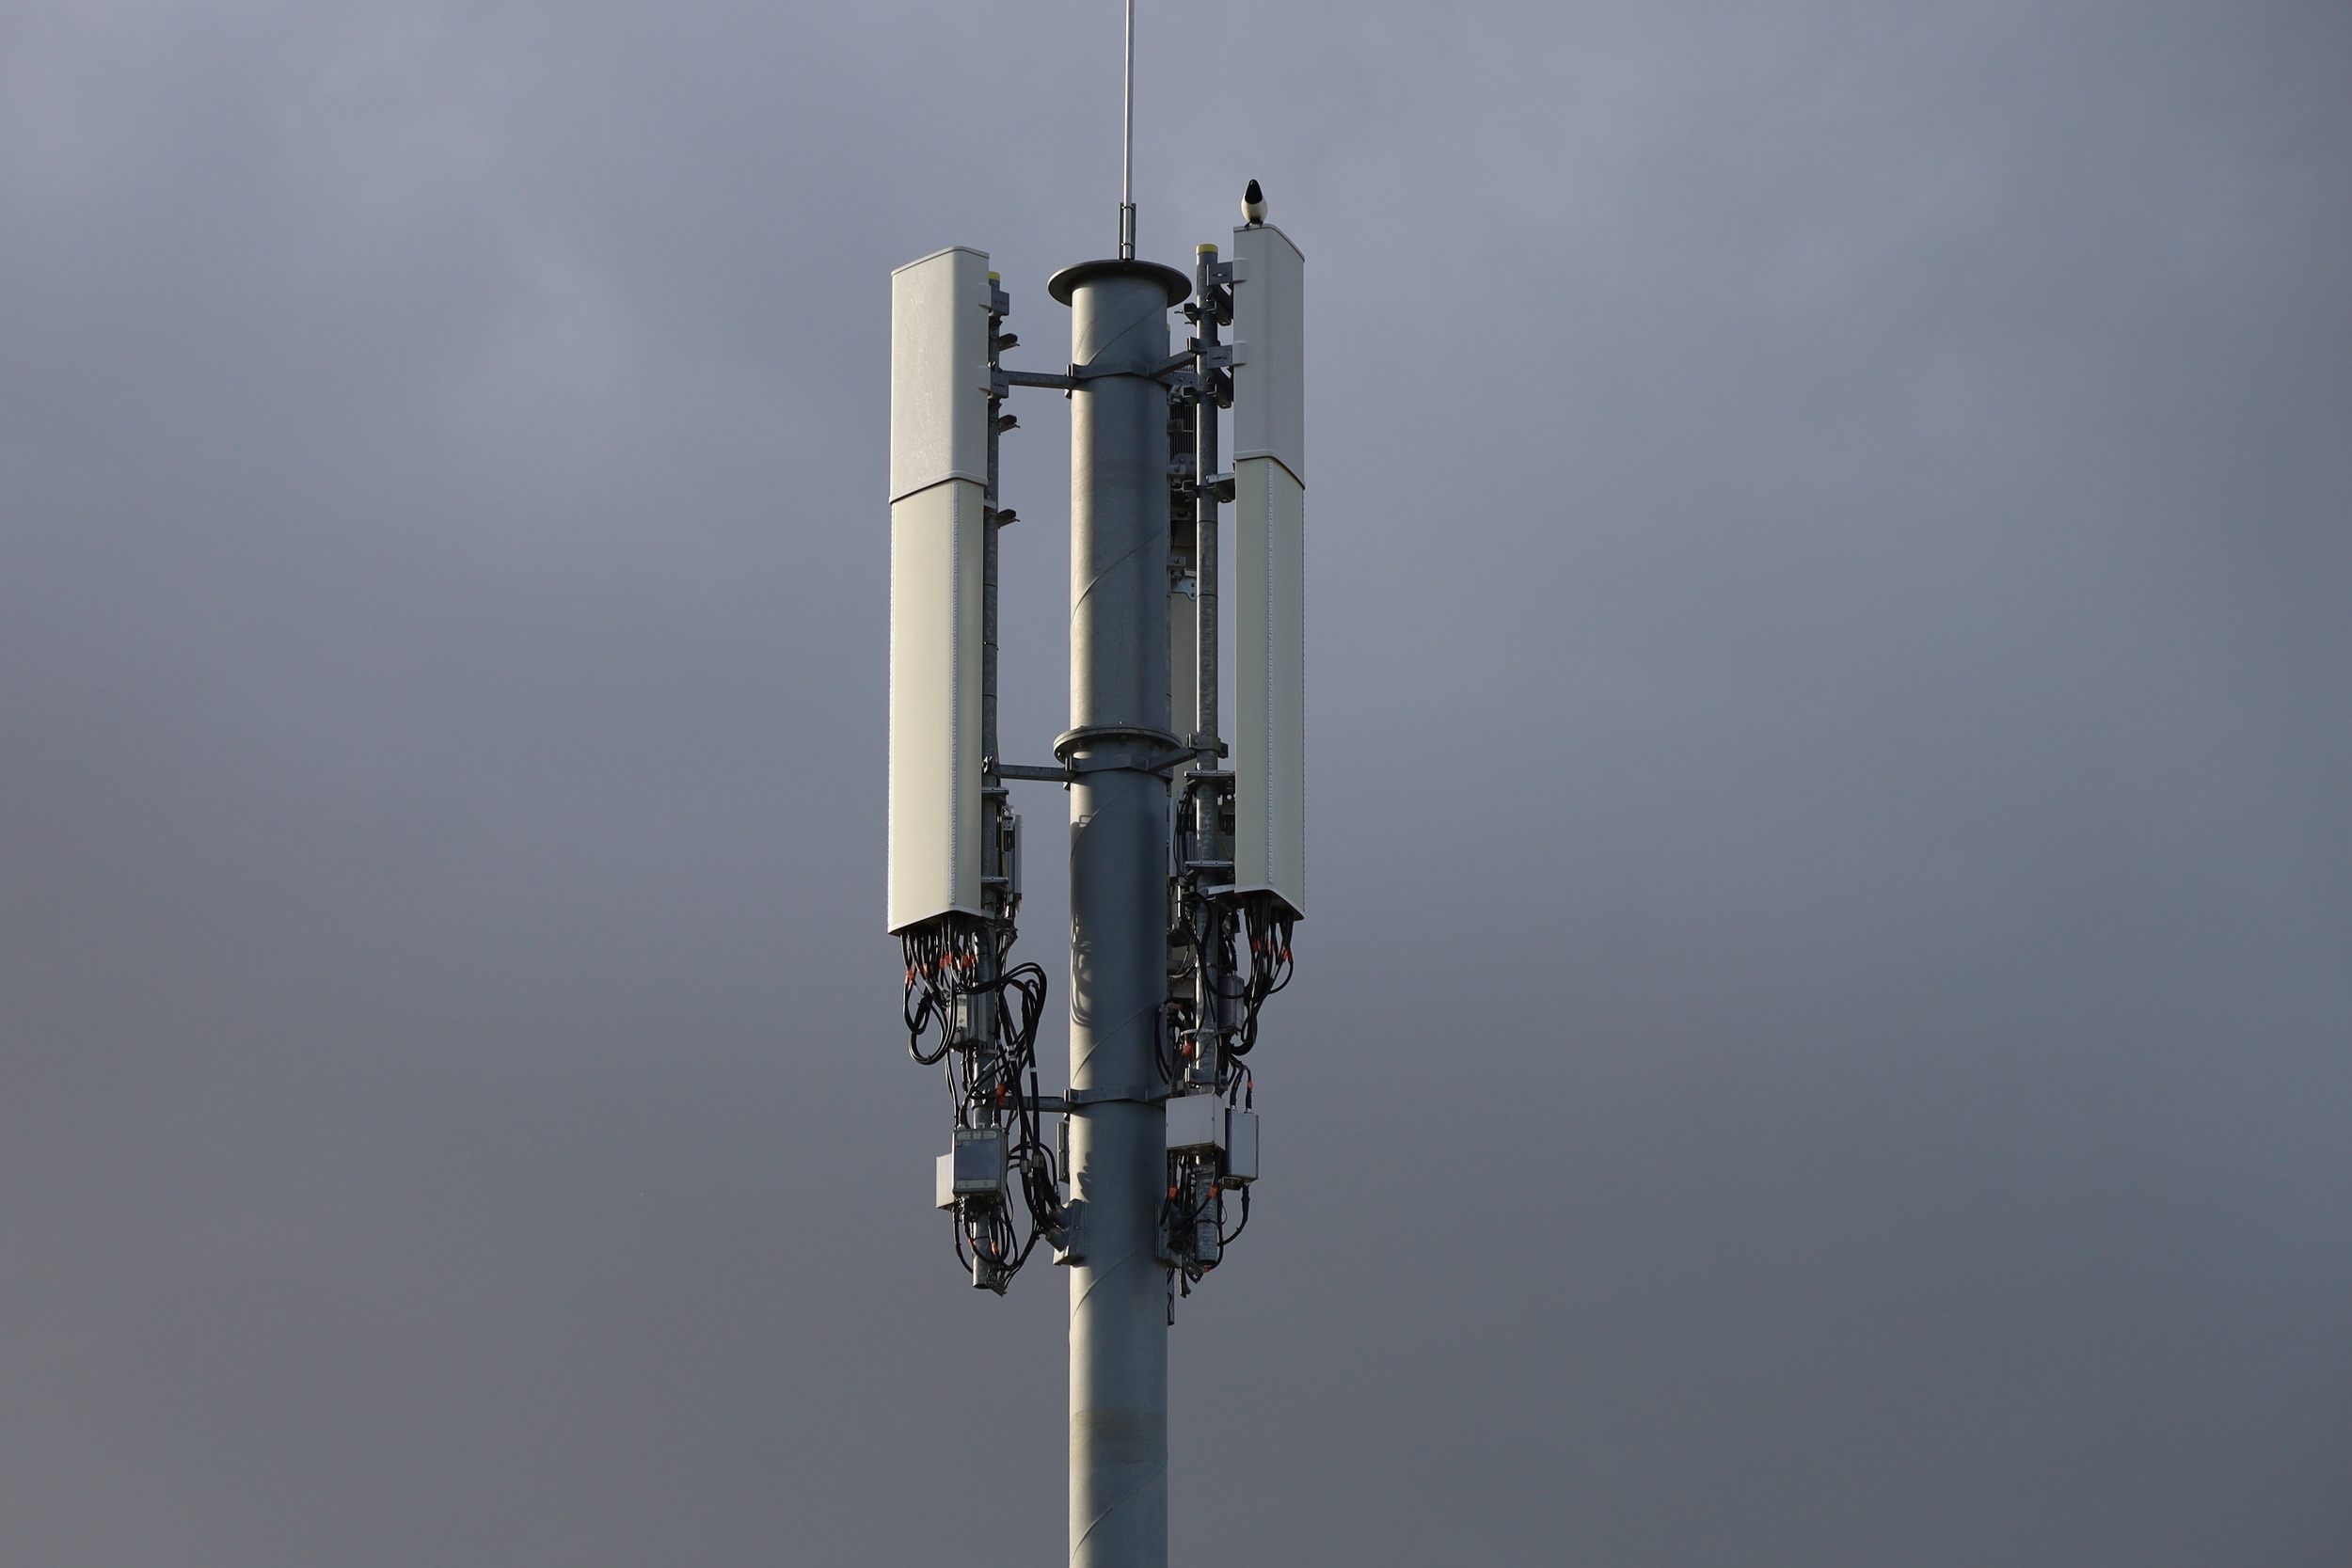 Le signal de l'antenne 4G d'un opérateur perturbé par un écran